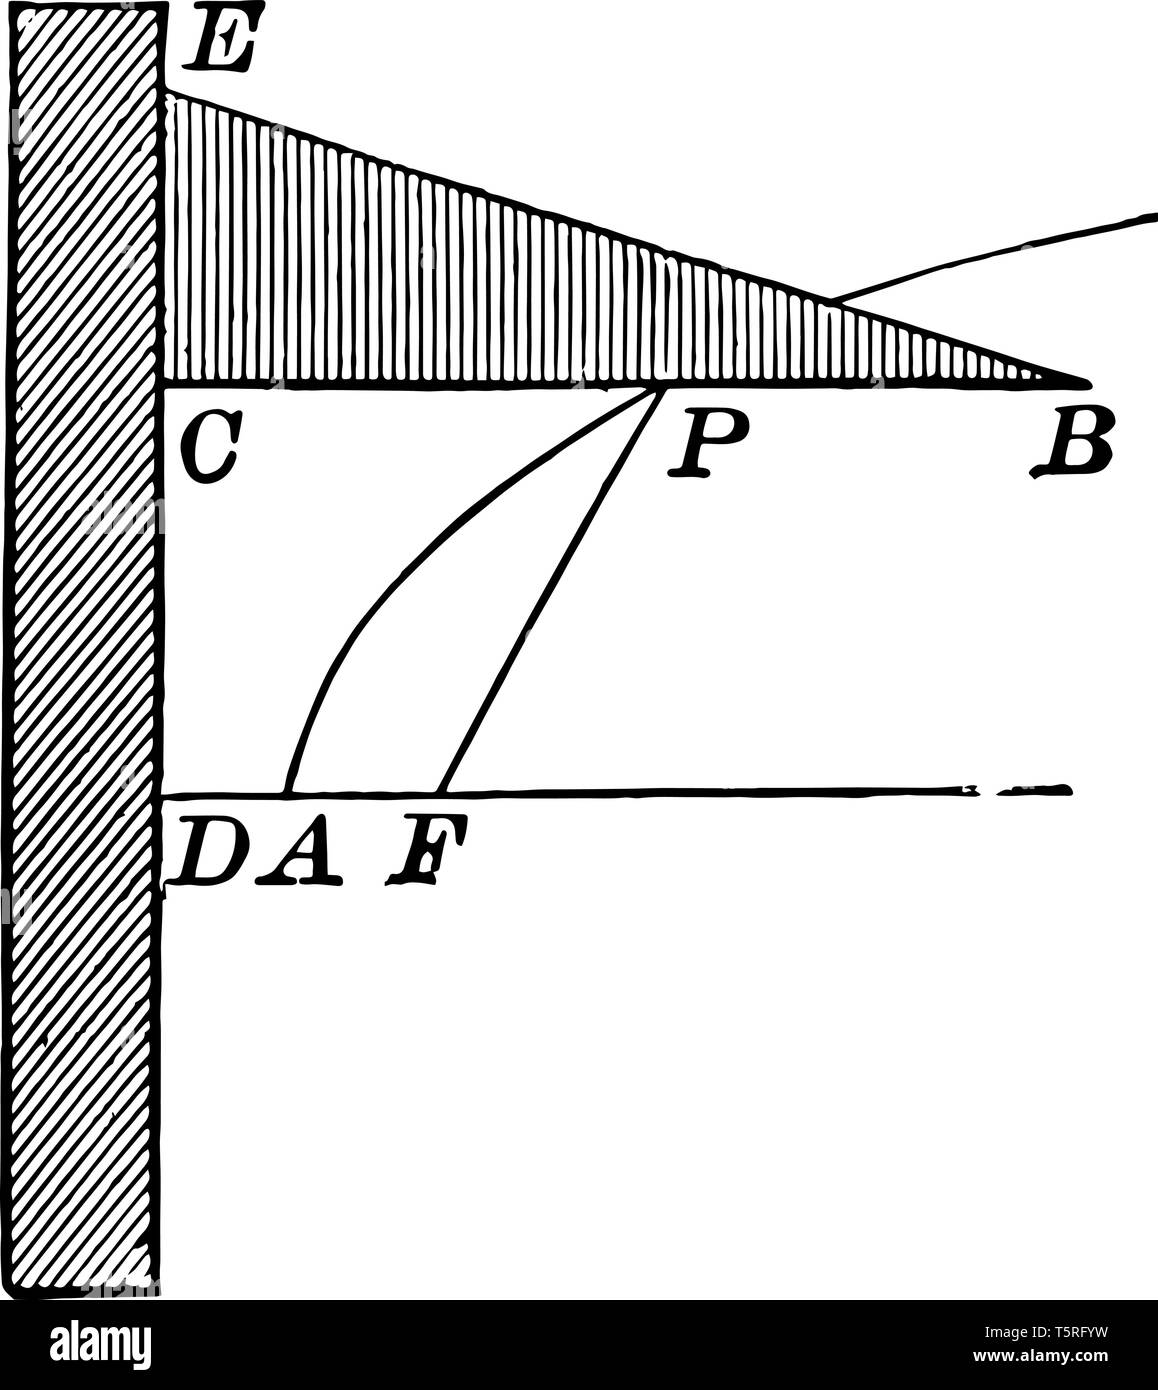 L'accent est mis sur l'axe de symétrie et directrix est perpendiculaire à l'axe de symétrie, vintage dessin ou gravure illustration. Illustration de Vecteur